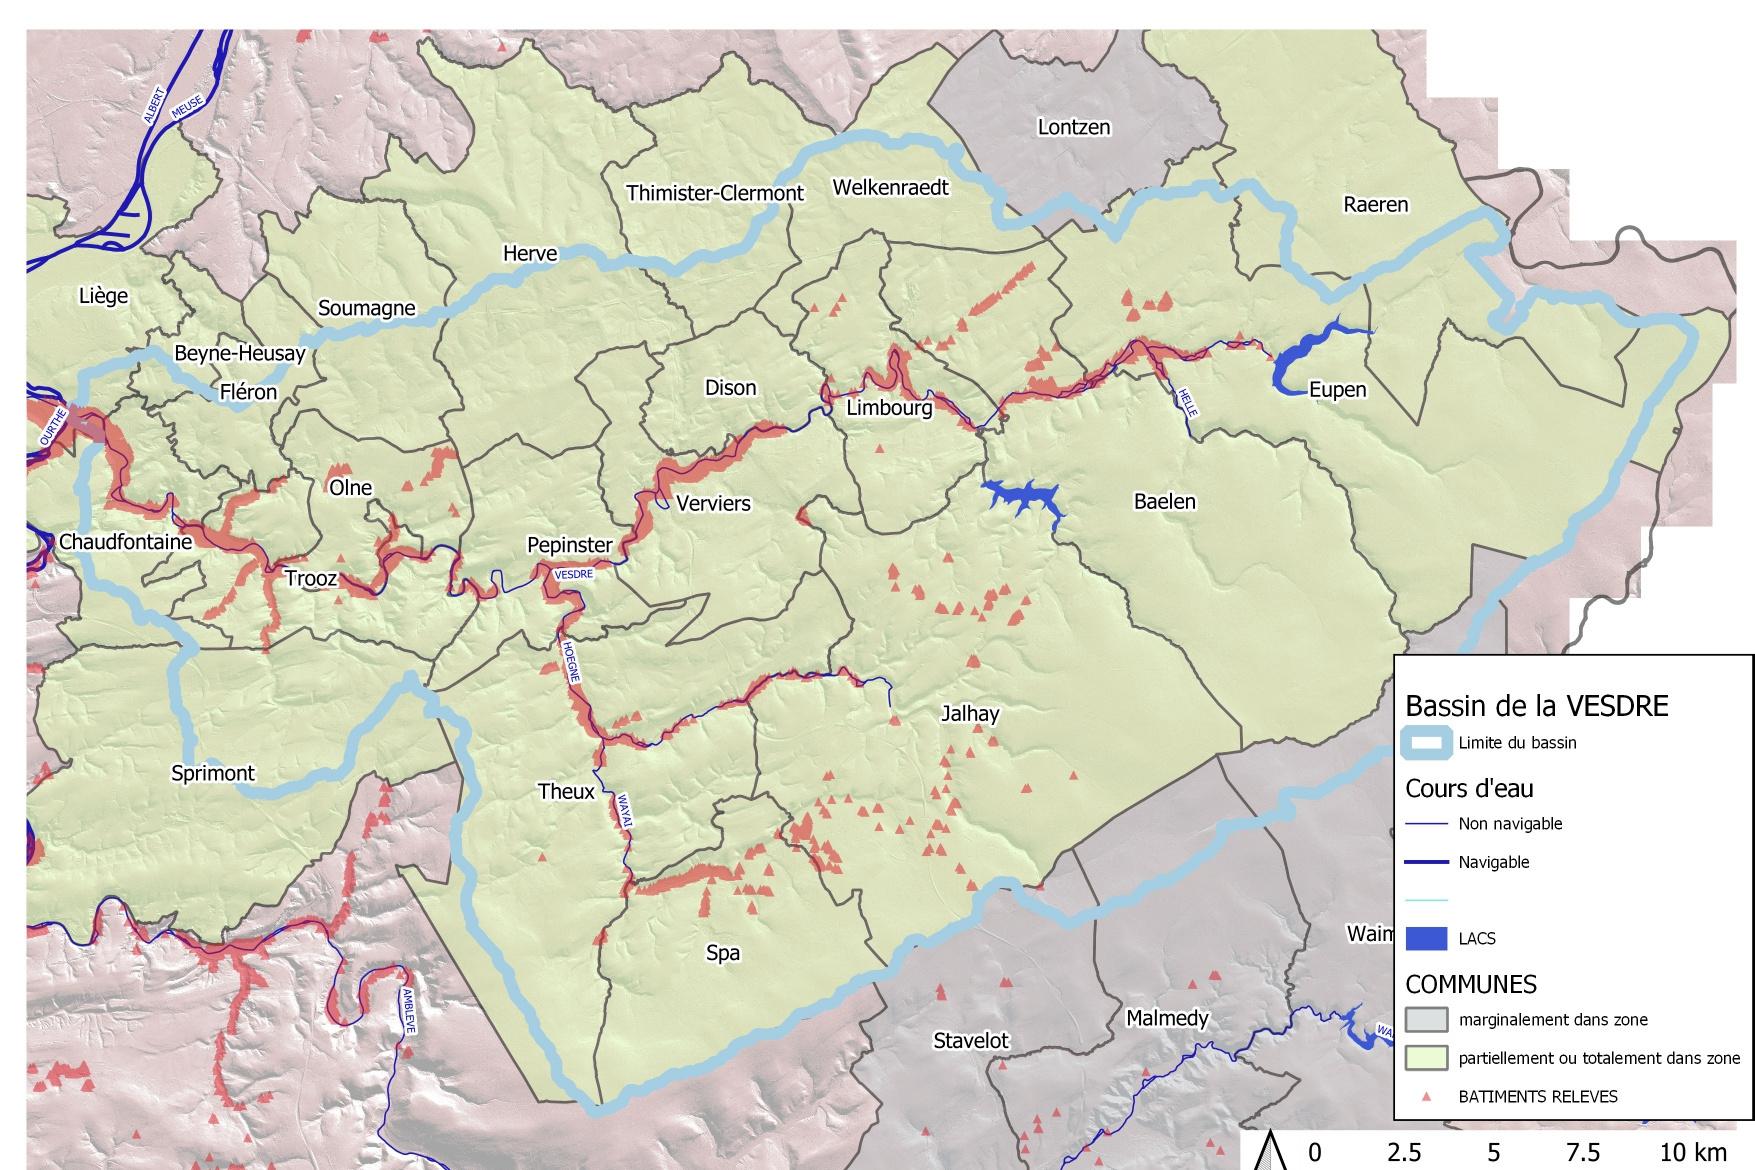 Dégâts, décès: les chiffres des inondations en vallée de la Vesdre